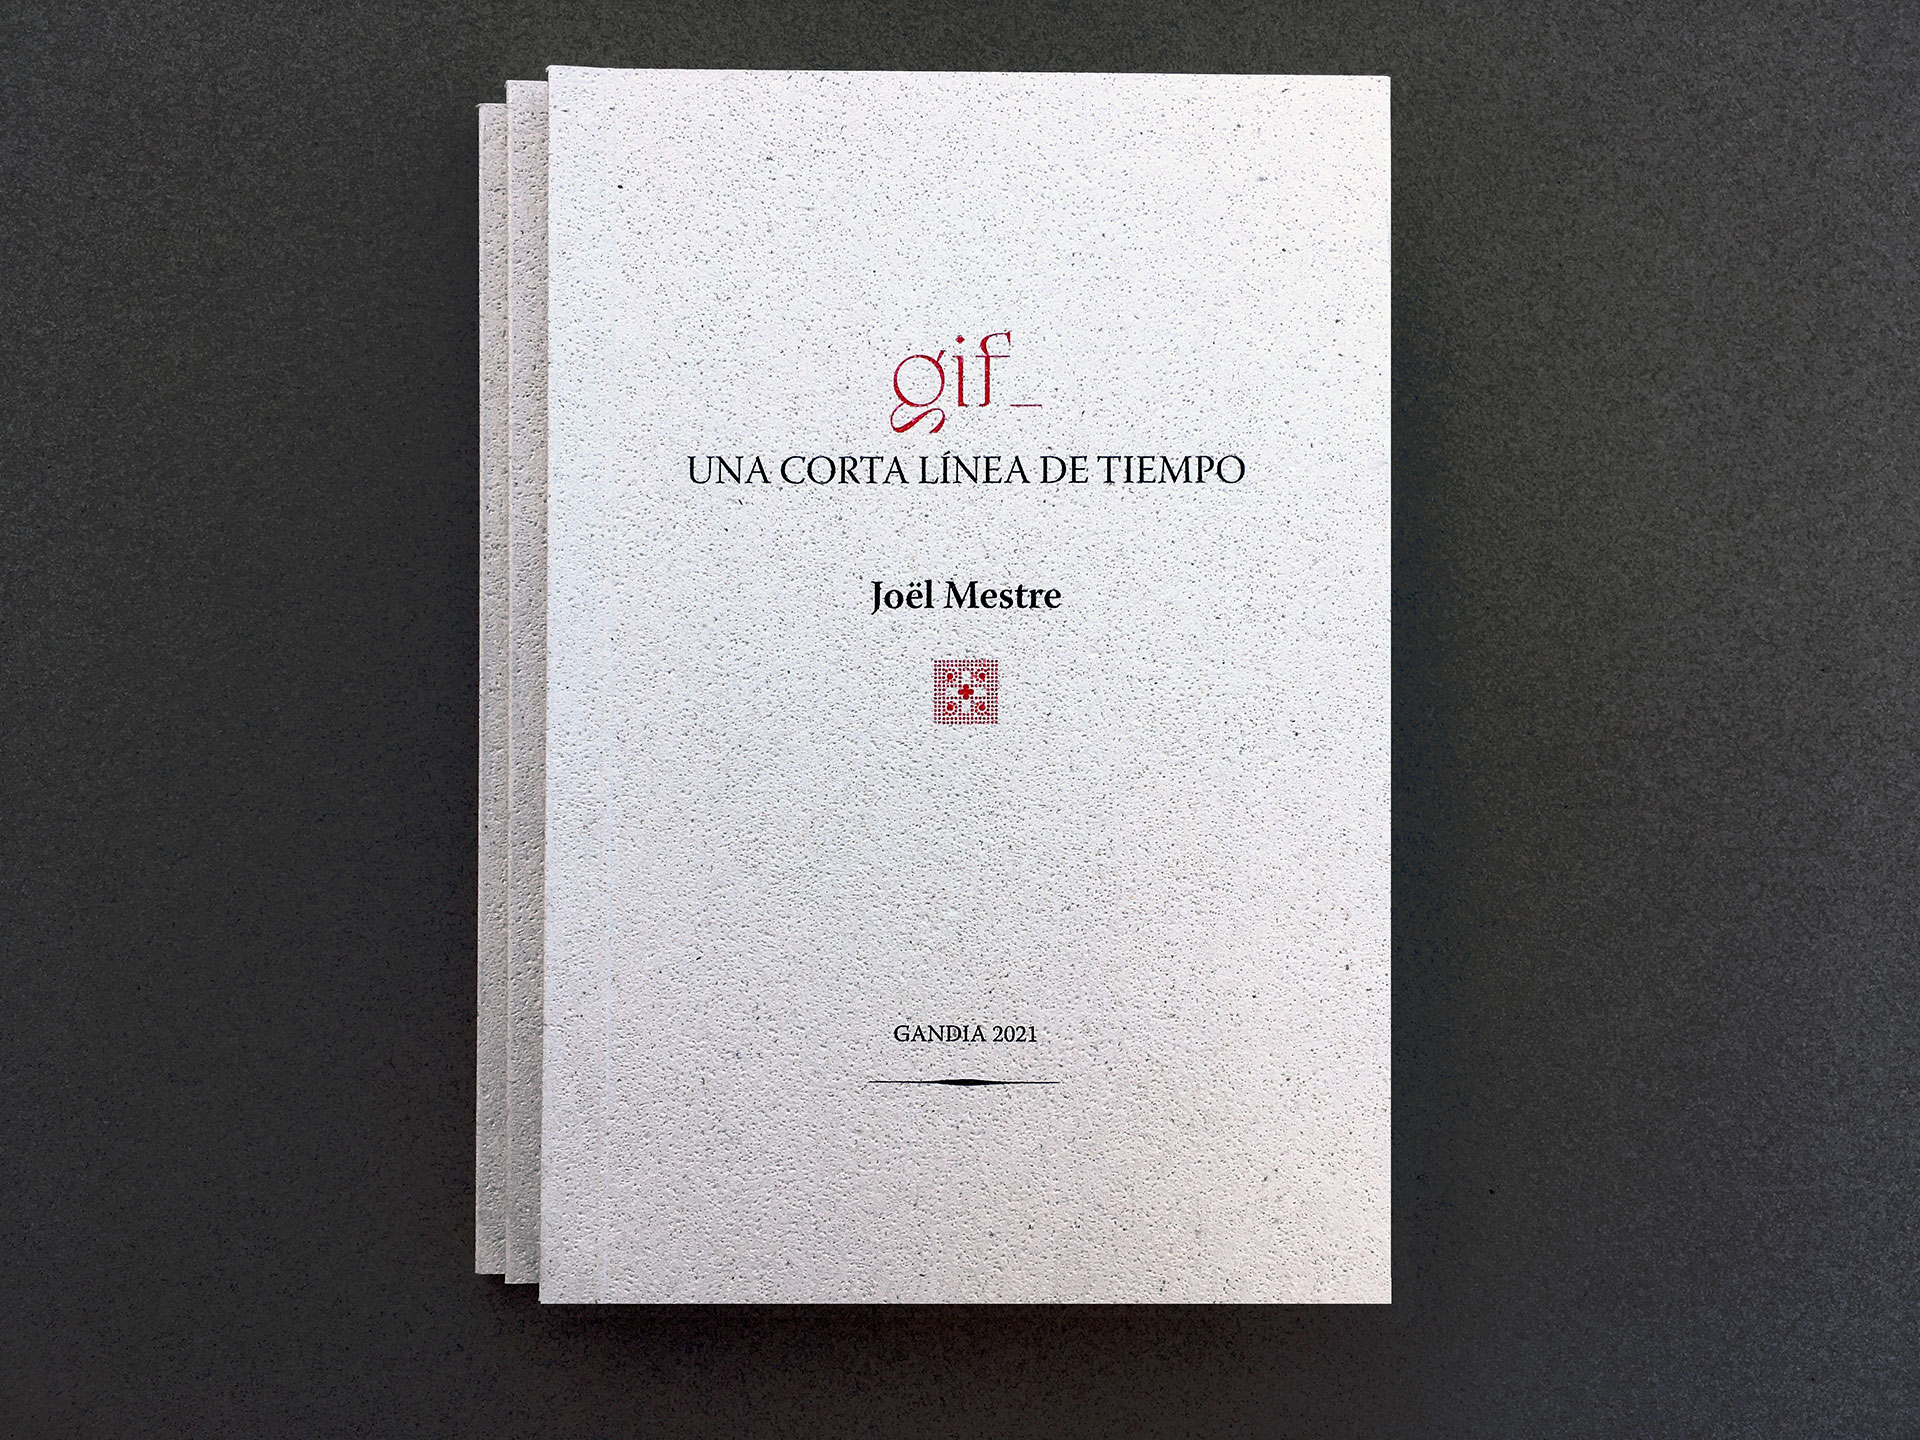 Diseño libro - GIF - Una corta línea de tiempo